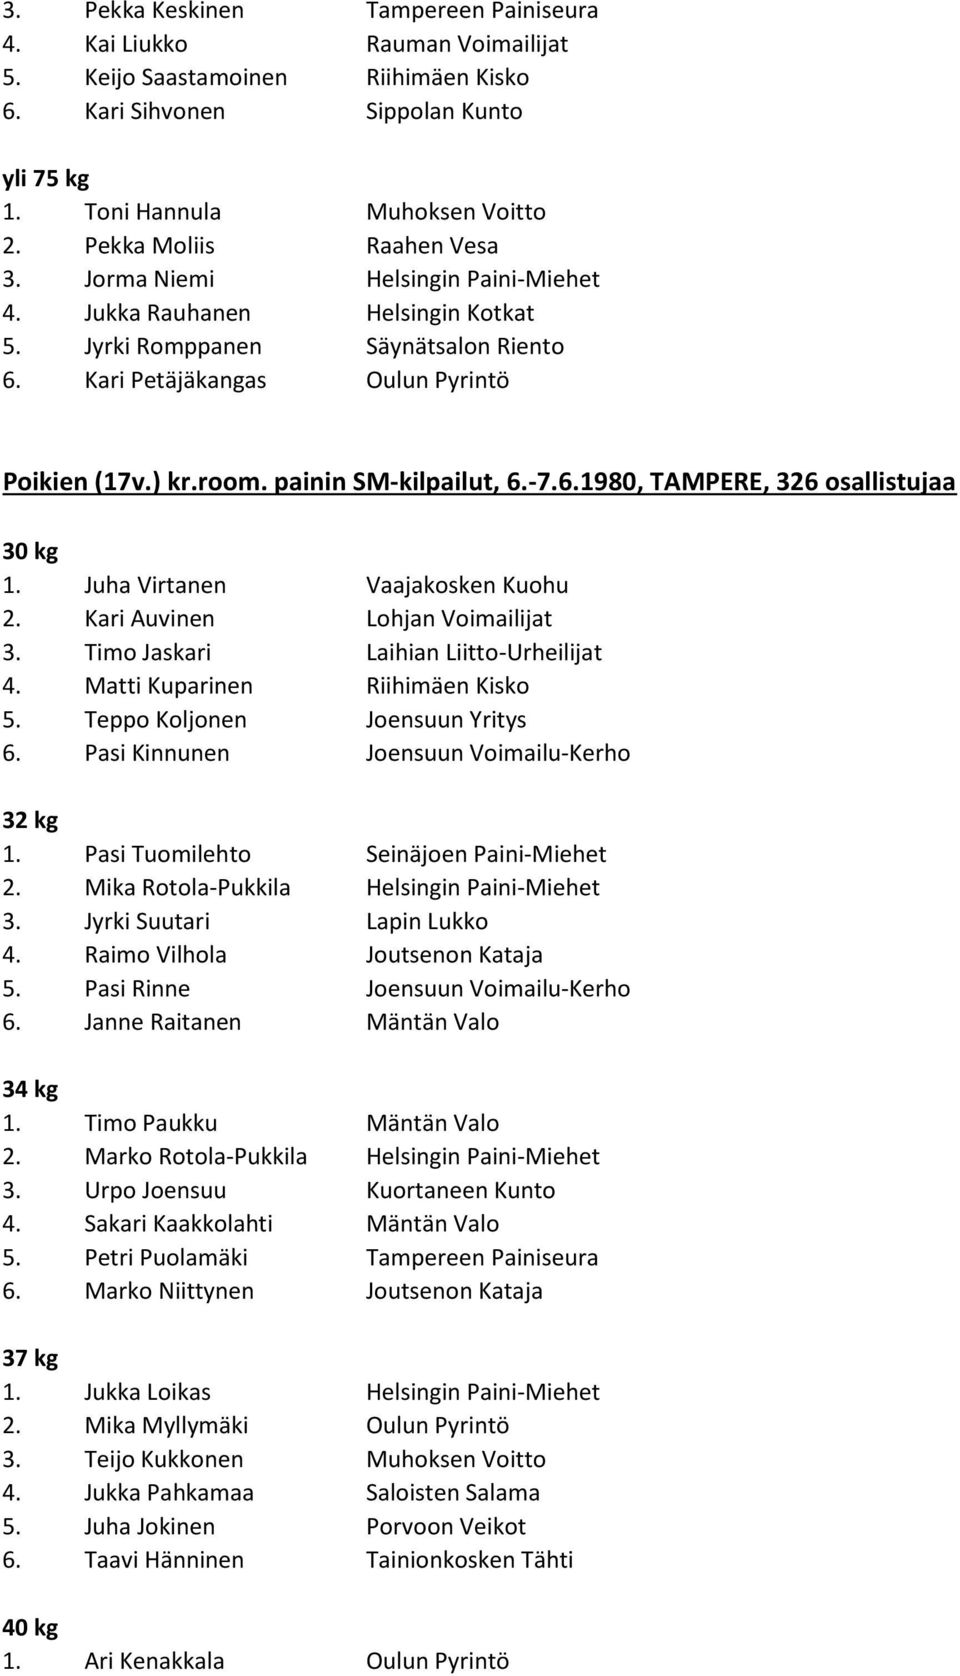 painin SM-kilpailut, 6.-7.6.1980, TAMPERE, 326 osallistujaa 30 kg 1. Juha Virtanen Vaajakosken Kuohu 2. Kari Auvinen Lohjan Voimailijat 3. Timo Jaskari Laihian Liitto-Urheilijat 4.